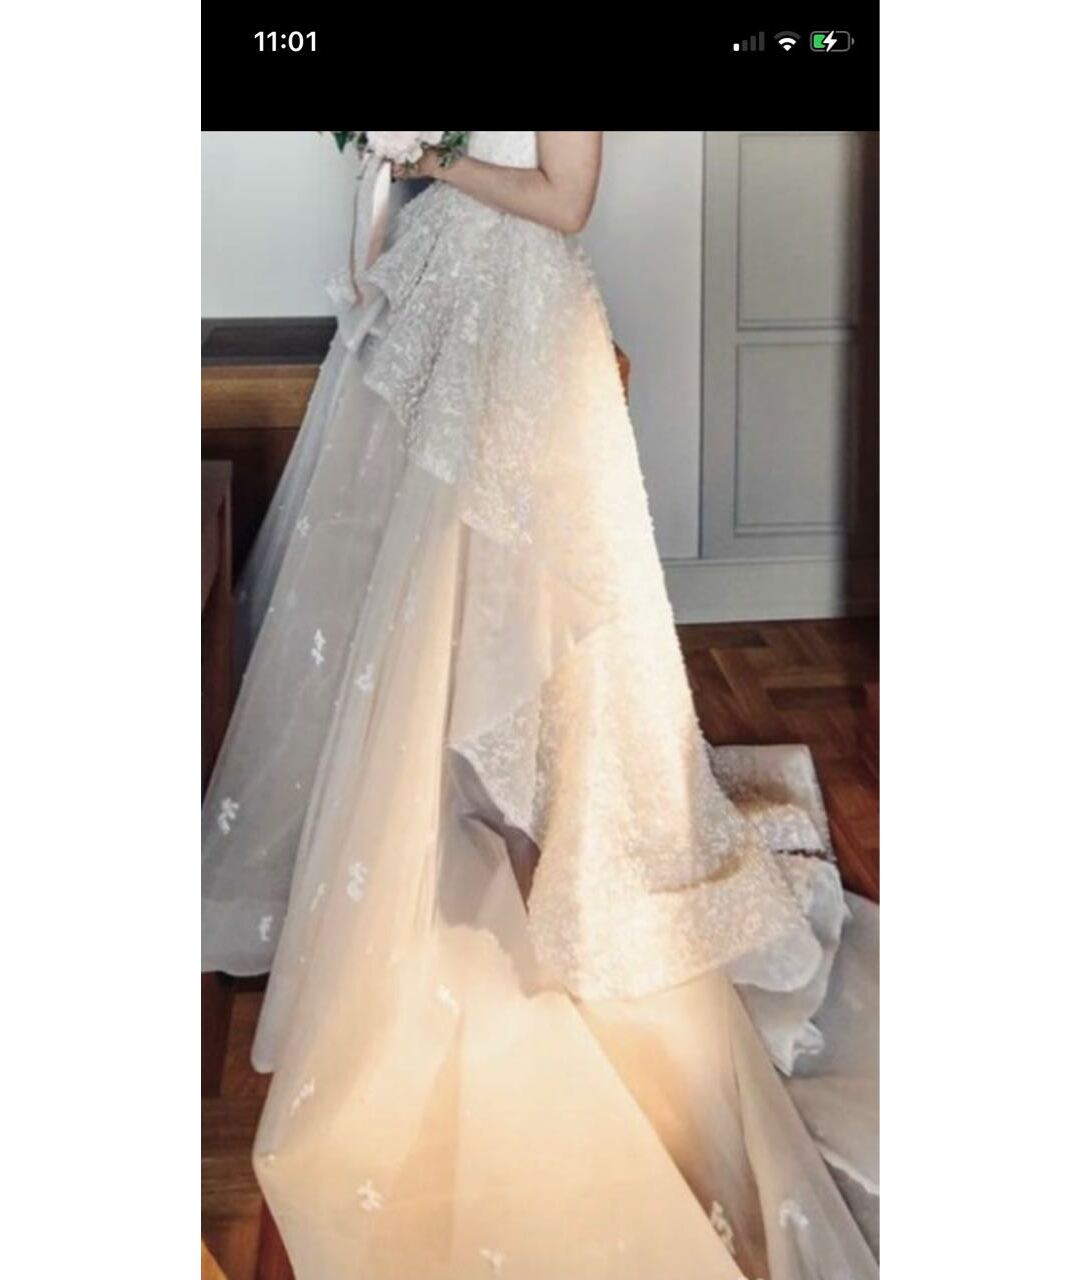 SAIID KOBEISY Бежевое кружевное свадебное платье, фото 2